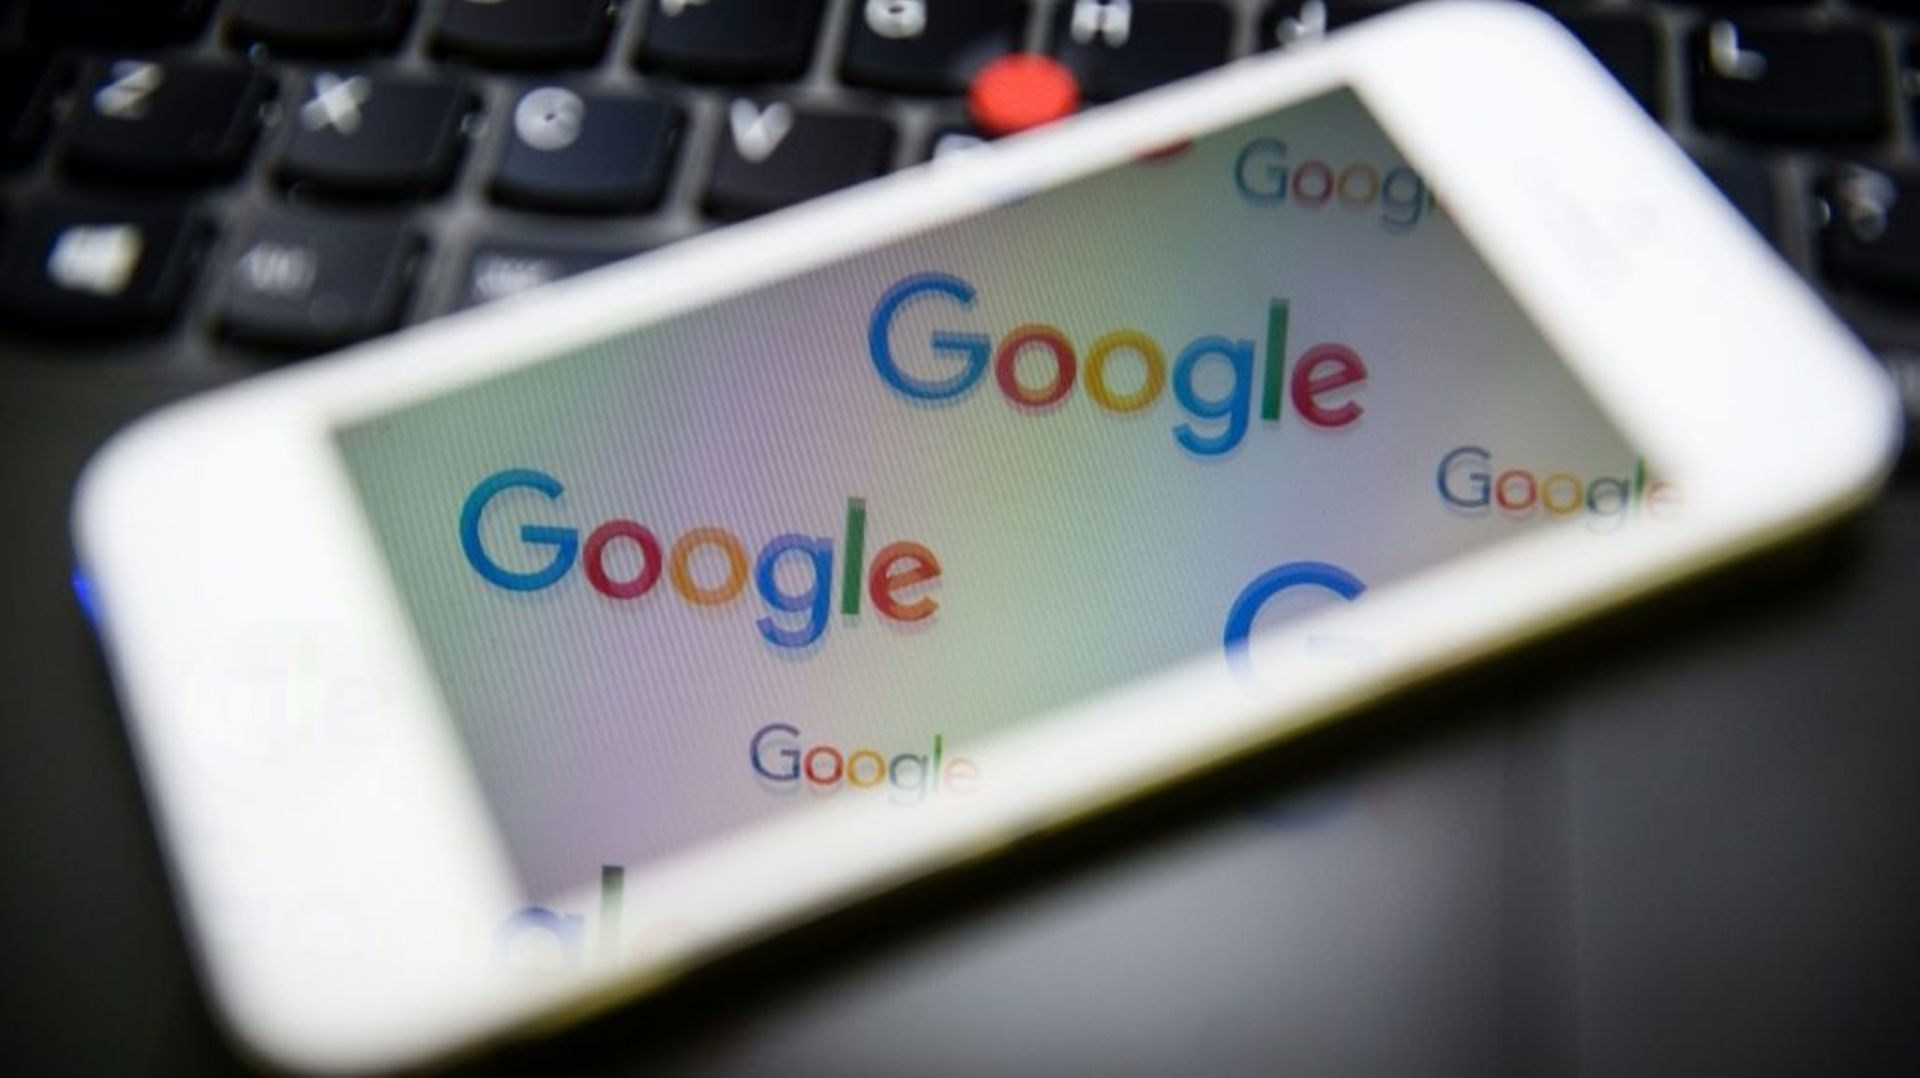 Google repousse le retour obligatoire de ses employés au bureau à janvier 2022